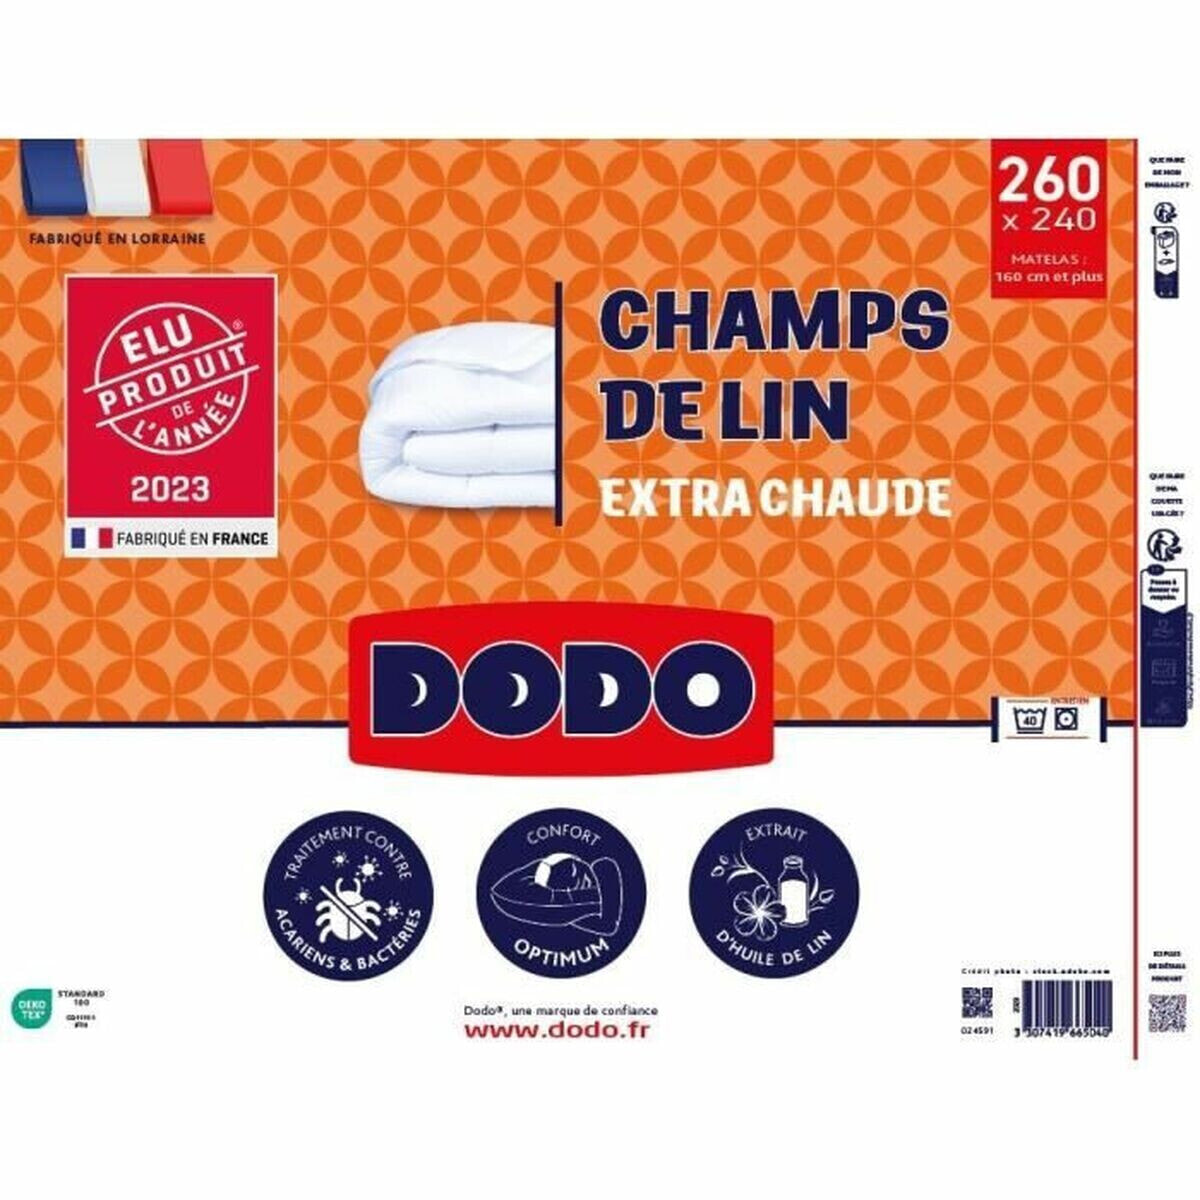 Duvet DODO Champs de Lin 240 x 260 cm White 450 g/m²